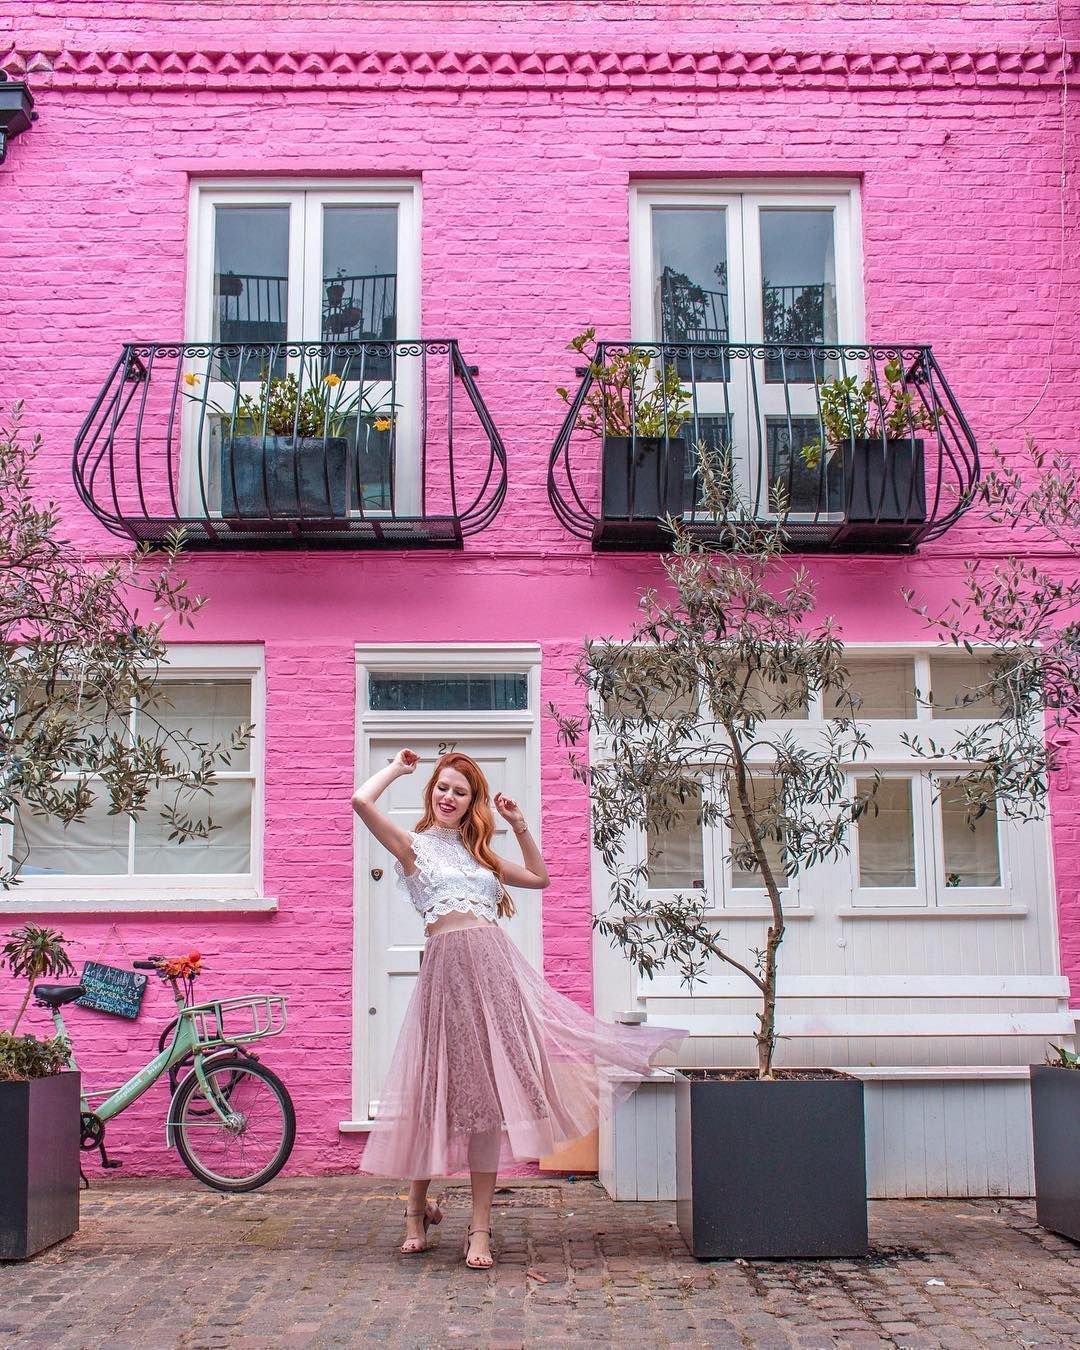 Дом с цветами розовый. Розовый домик. Розовый дом, с балконом. Дом розового цвета. Красивый розовый дом.